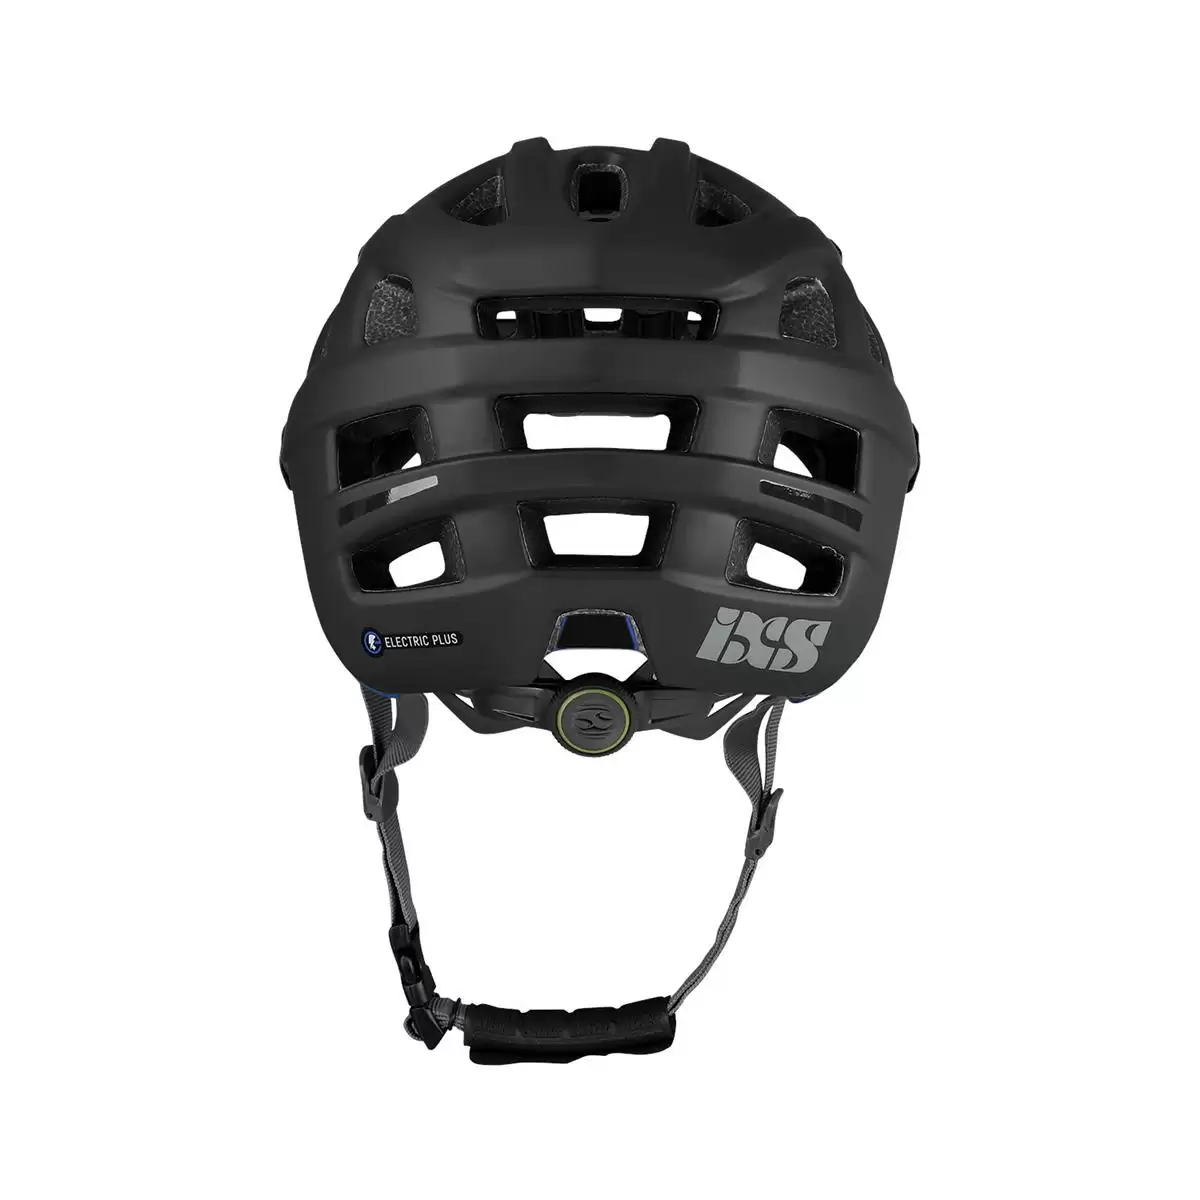 Henduro Helmet Trail Evo E-Bike Edition Black Size XS/S (49-54cm) #3